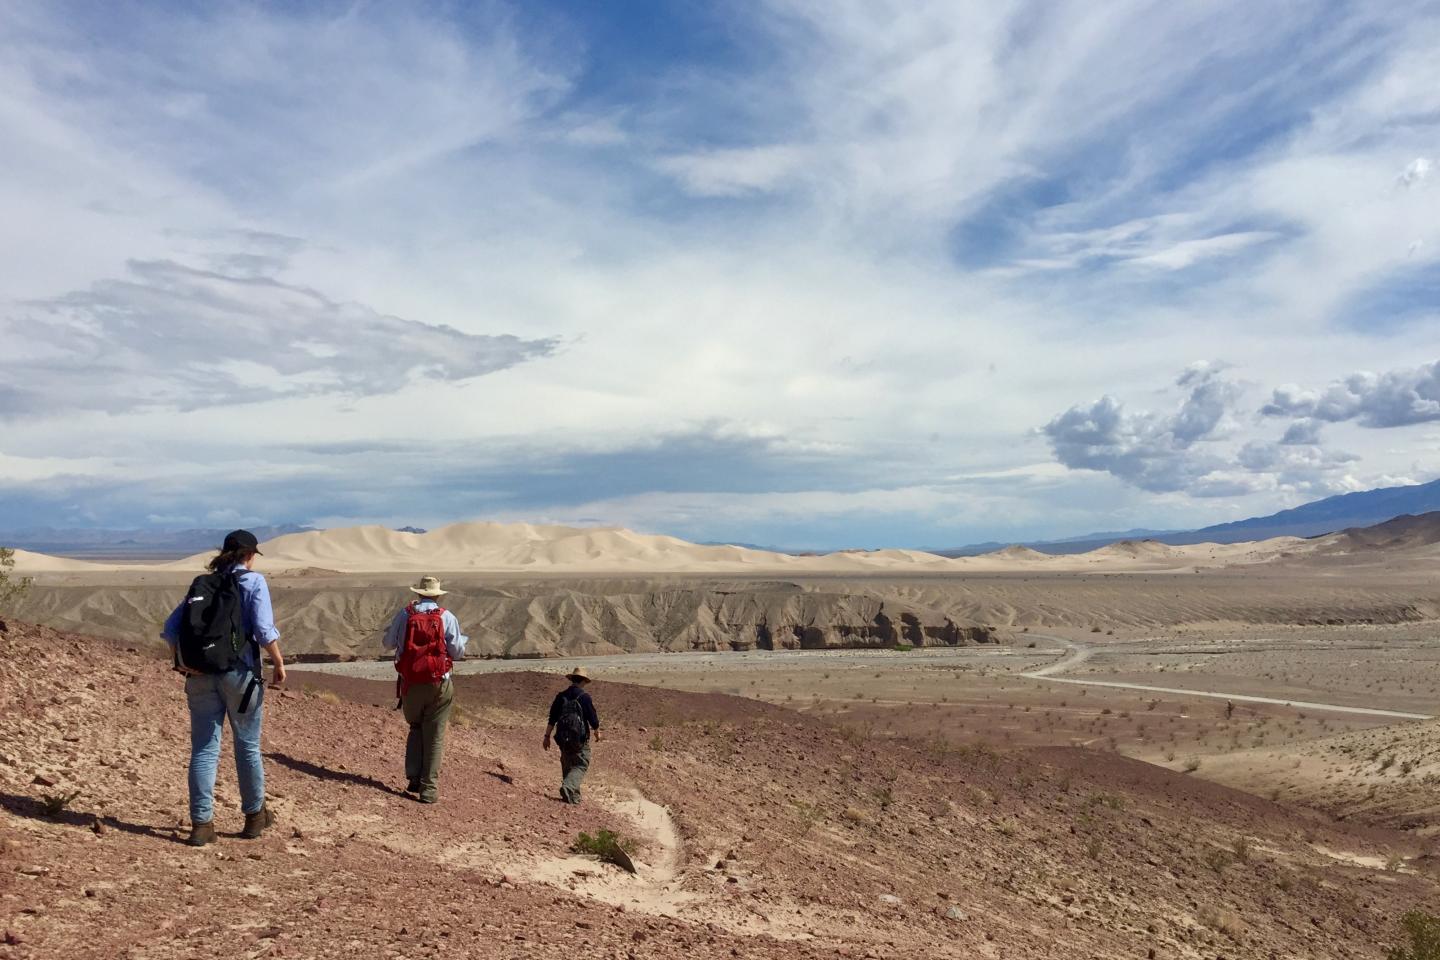 Les chercheurs parcourent le désert afin d’étudier des formations de fer